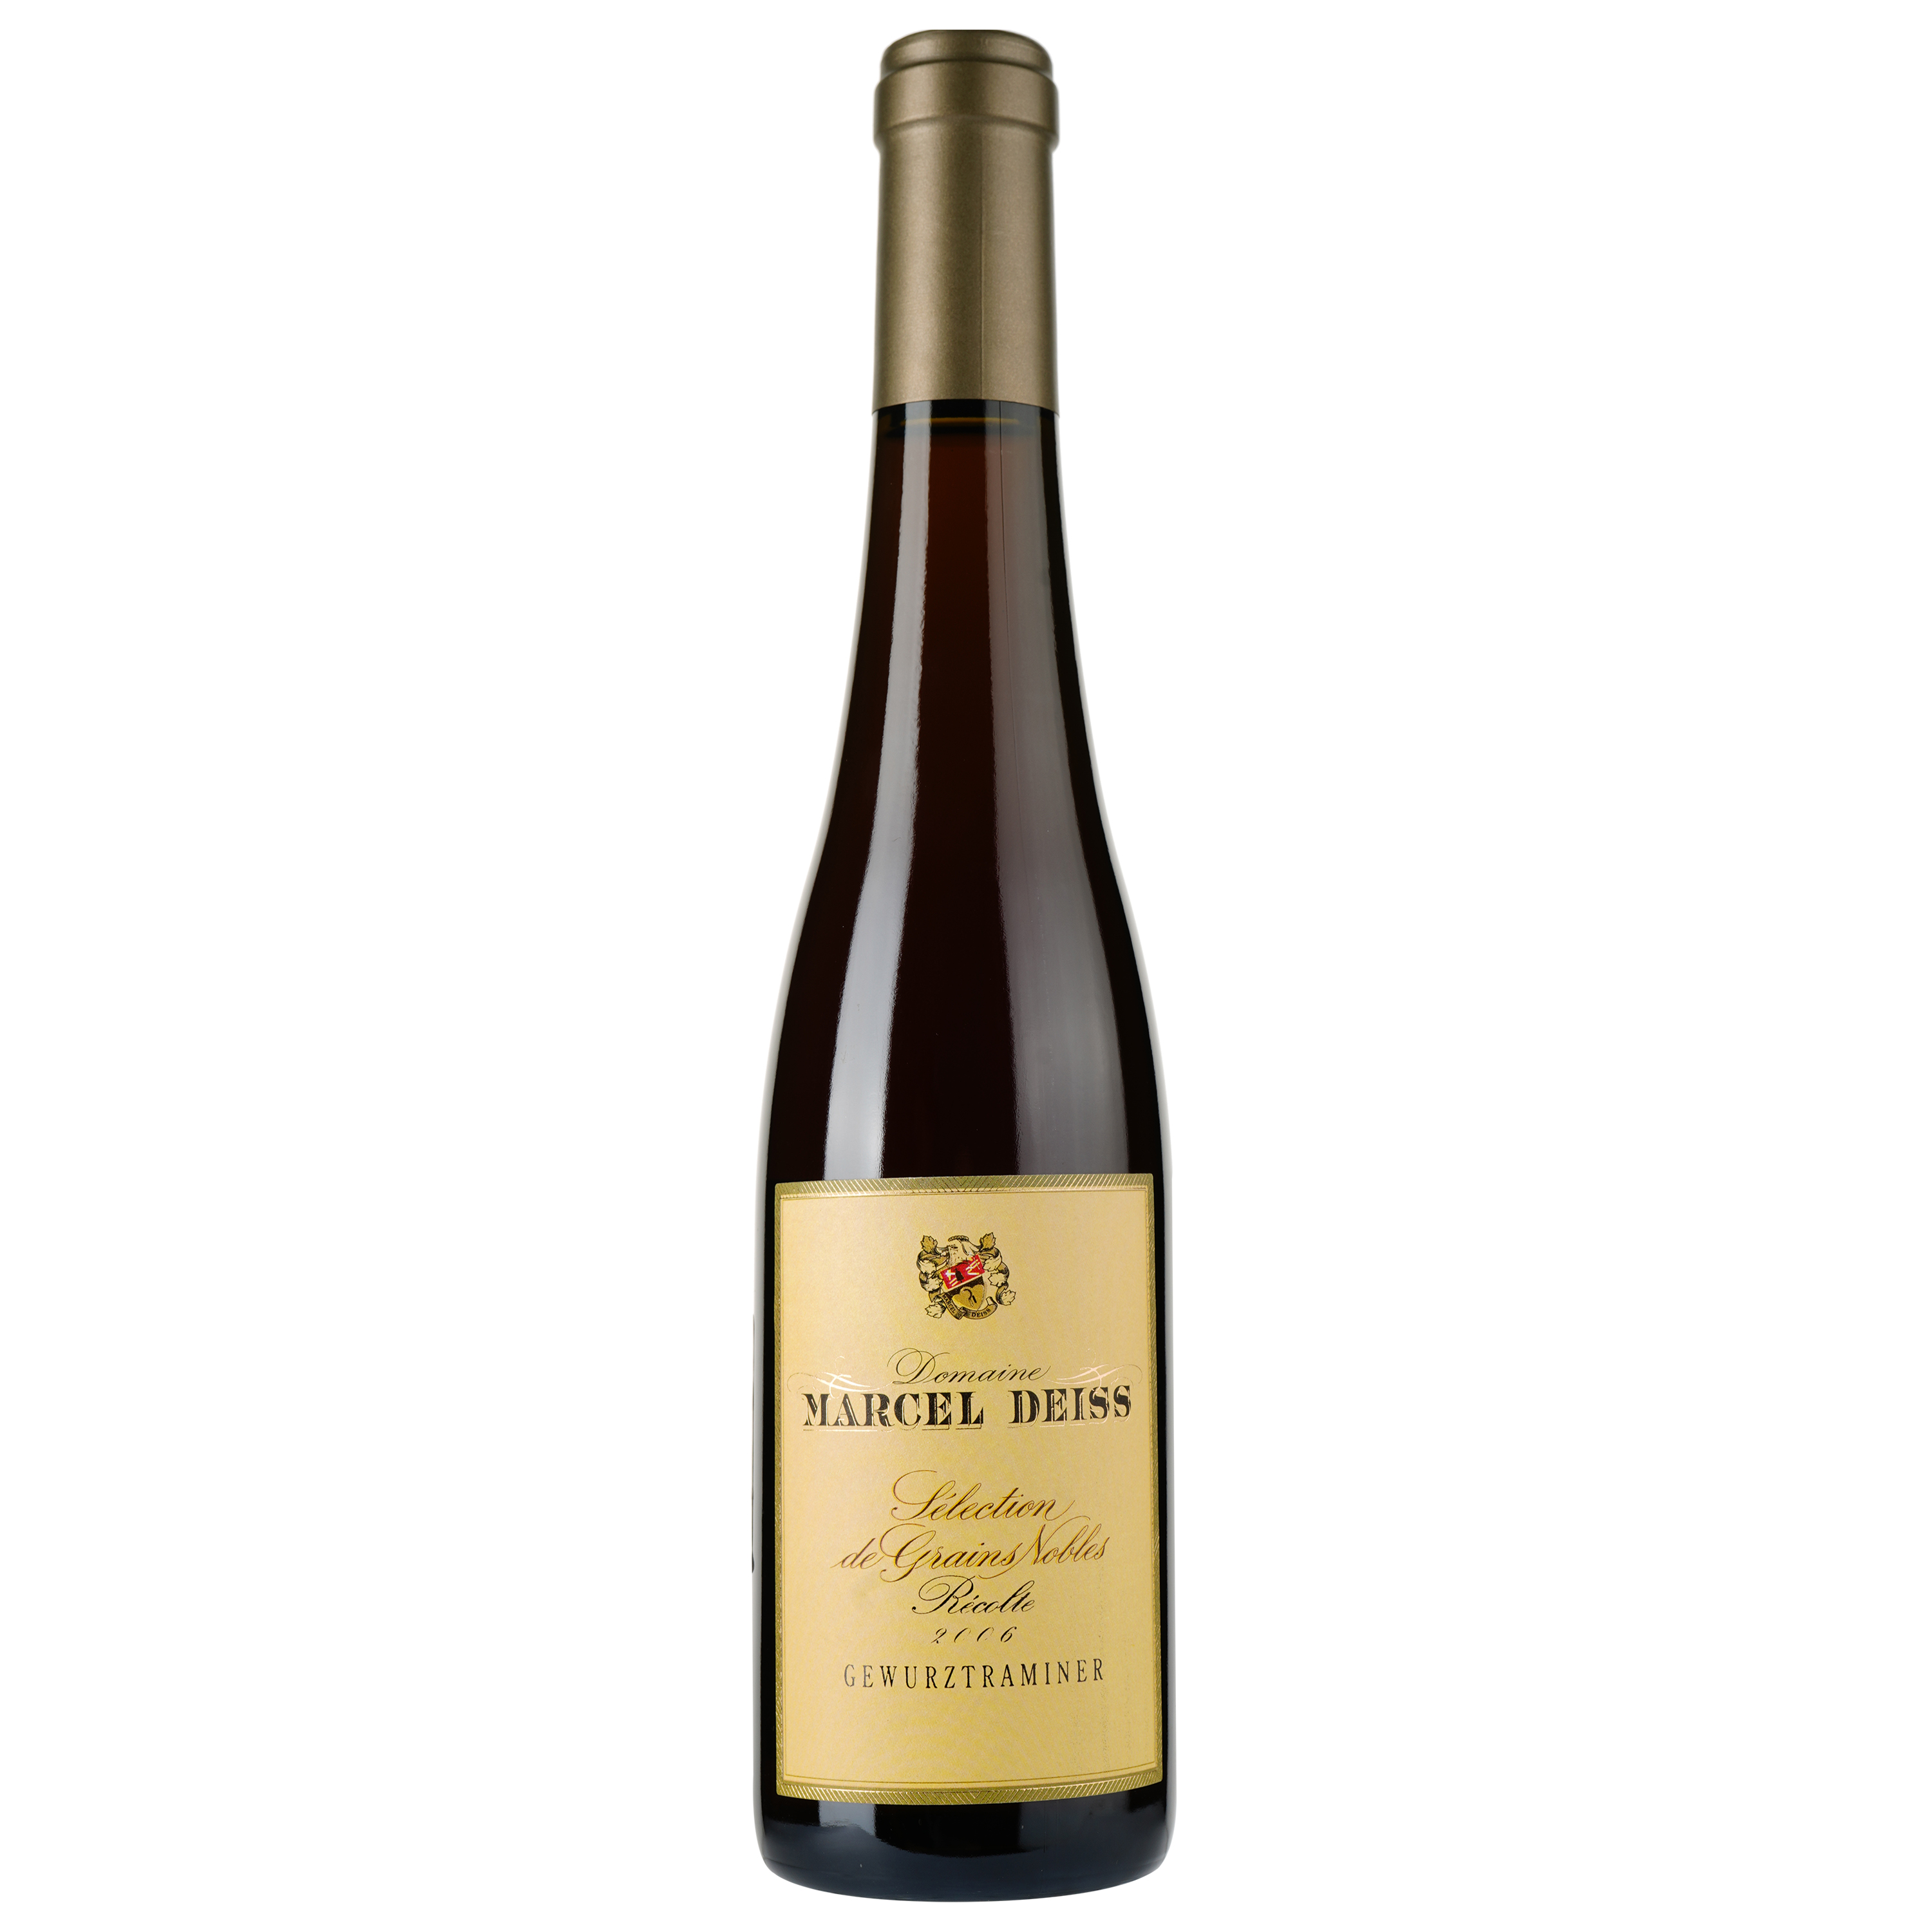 Вино Domaine Marcel Deiss Alsace Gewurztraminer Selection de Grains Nobles 2006 AOC, белое, сладкое, 0,375 л - фото 1